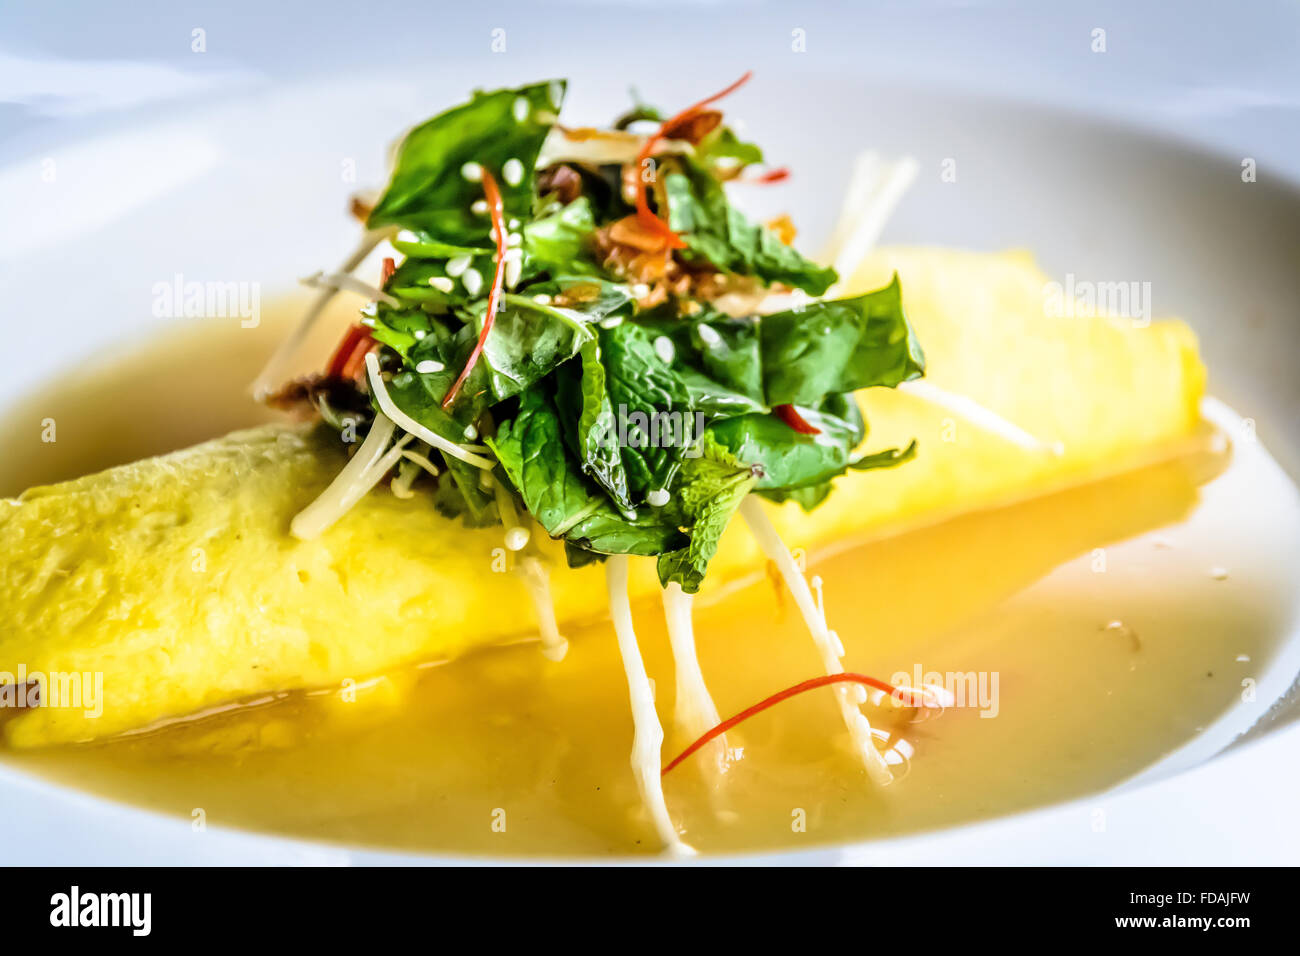 Crabe de Sydney, omelette aux champignons Enoki, et salade d'herbes, le miso Bouillon de moutarde Banque D'Images